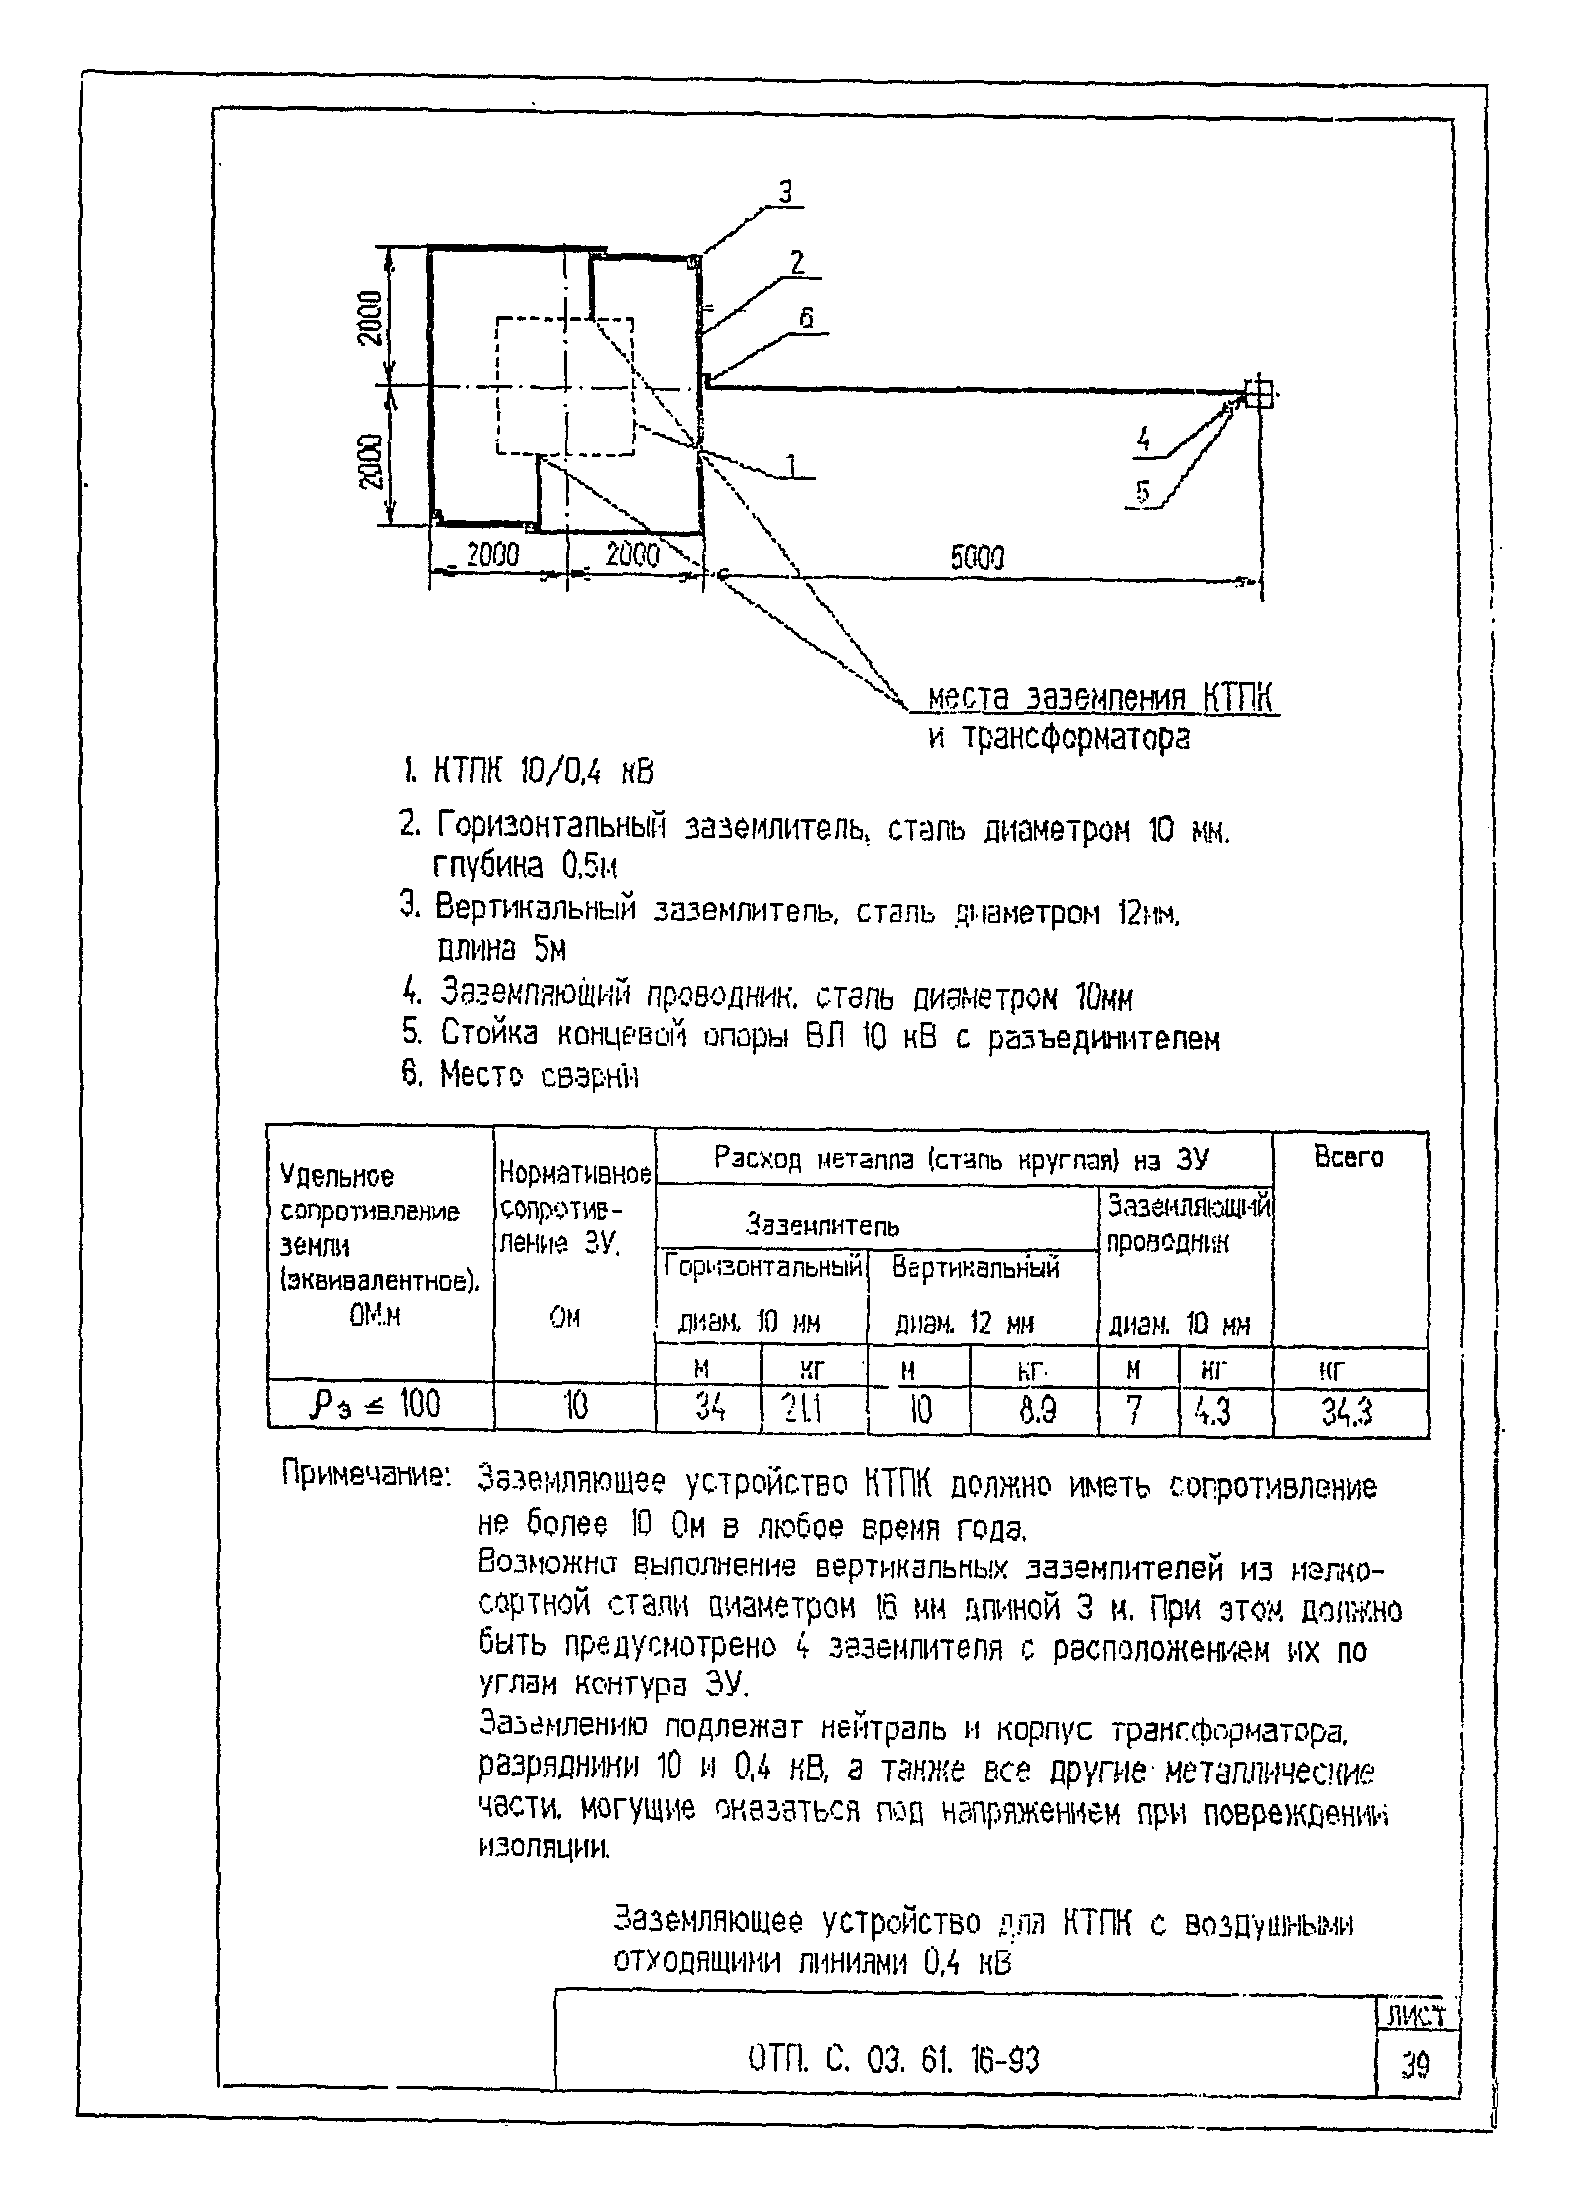 Типовой проект ОТП.С.03.61.16-93